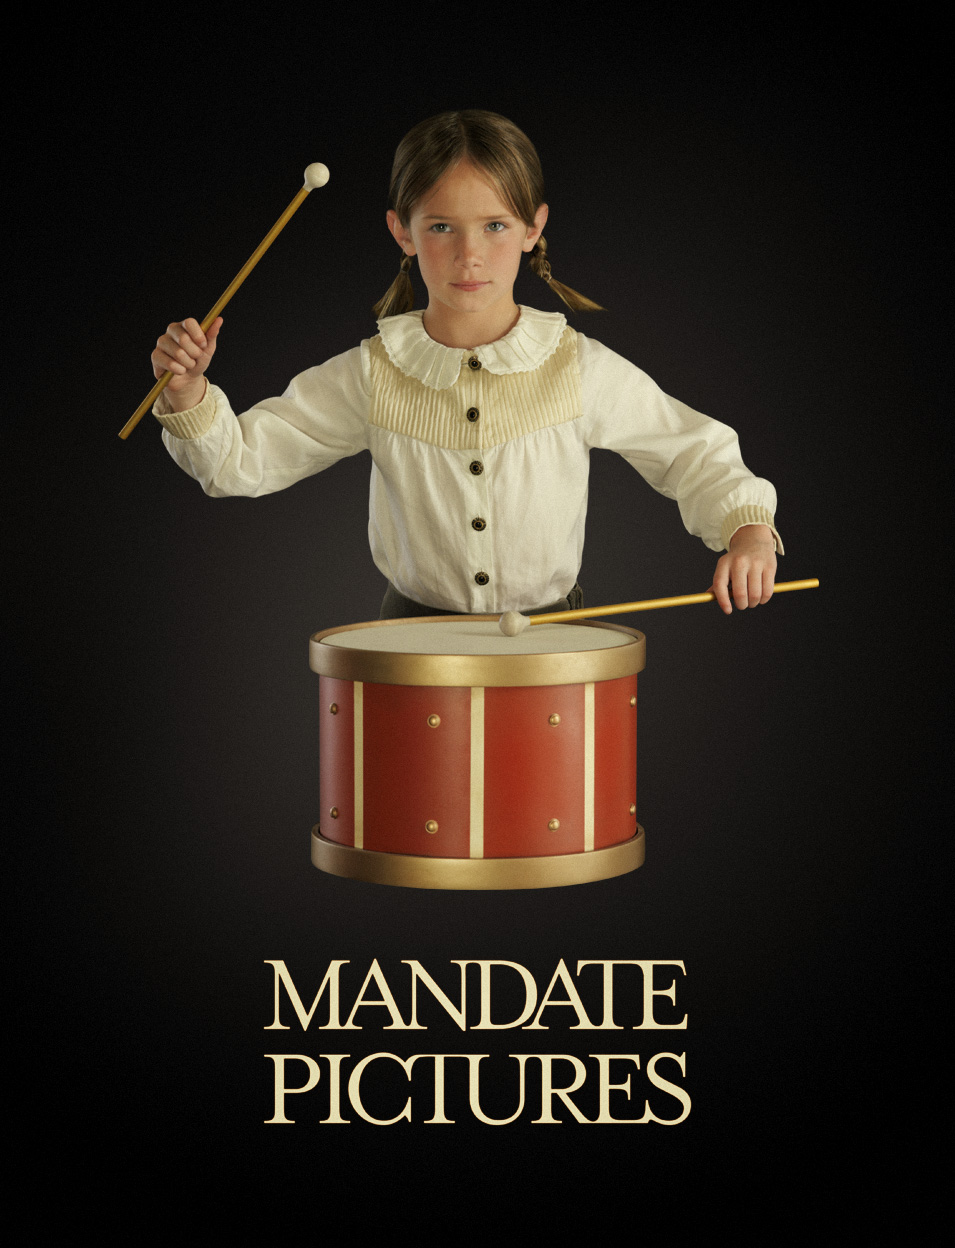 Mandate Pictures branding